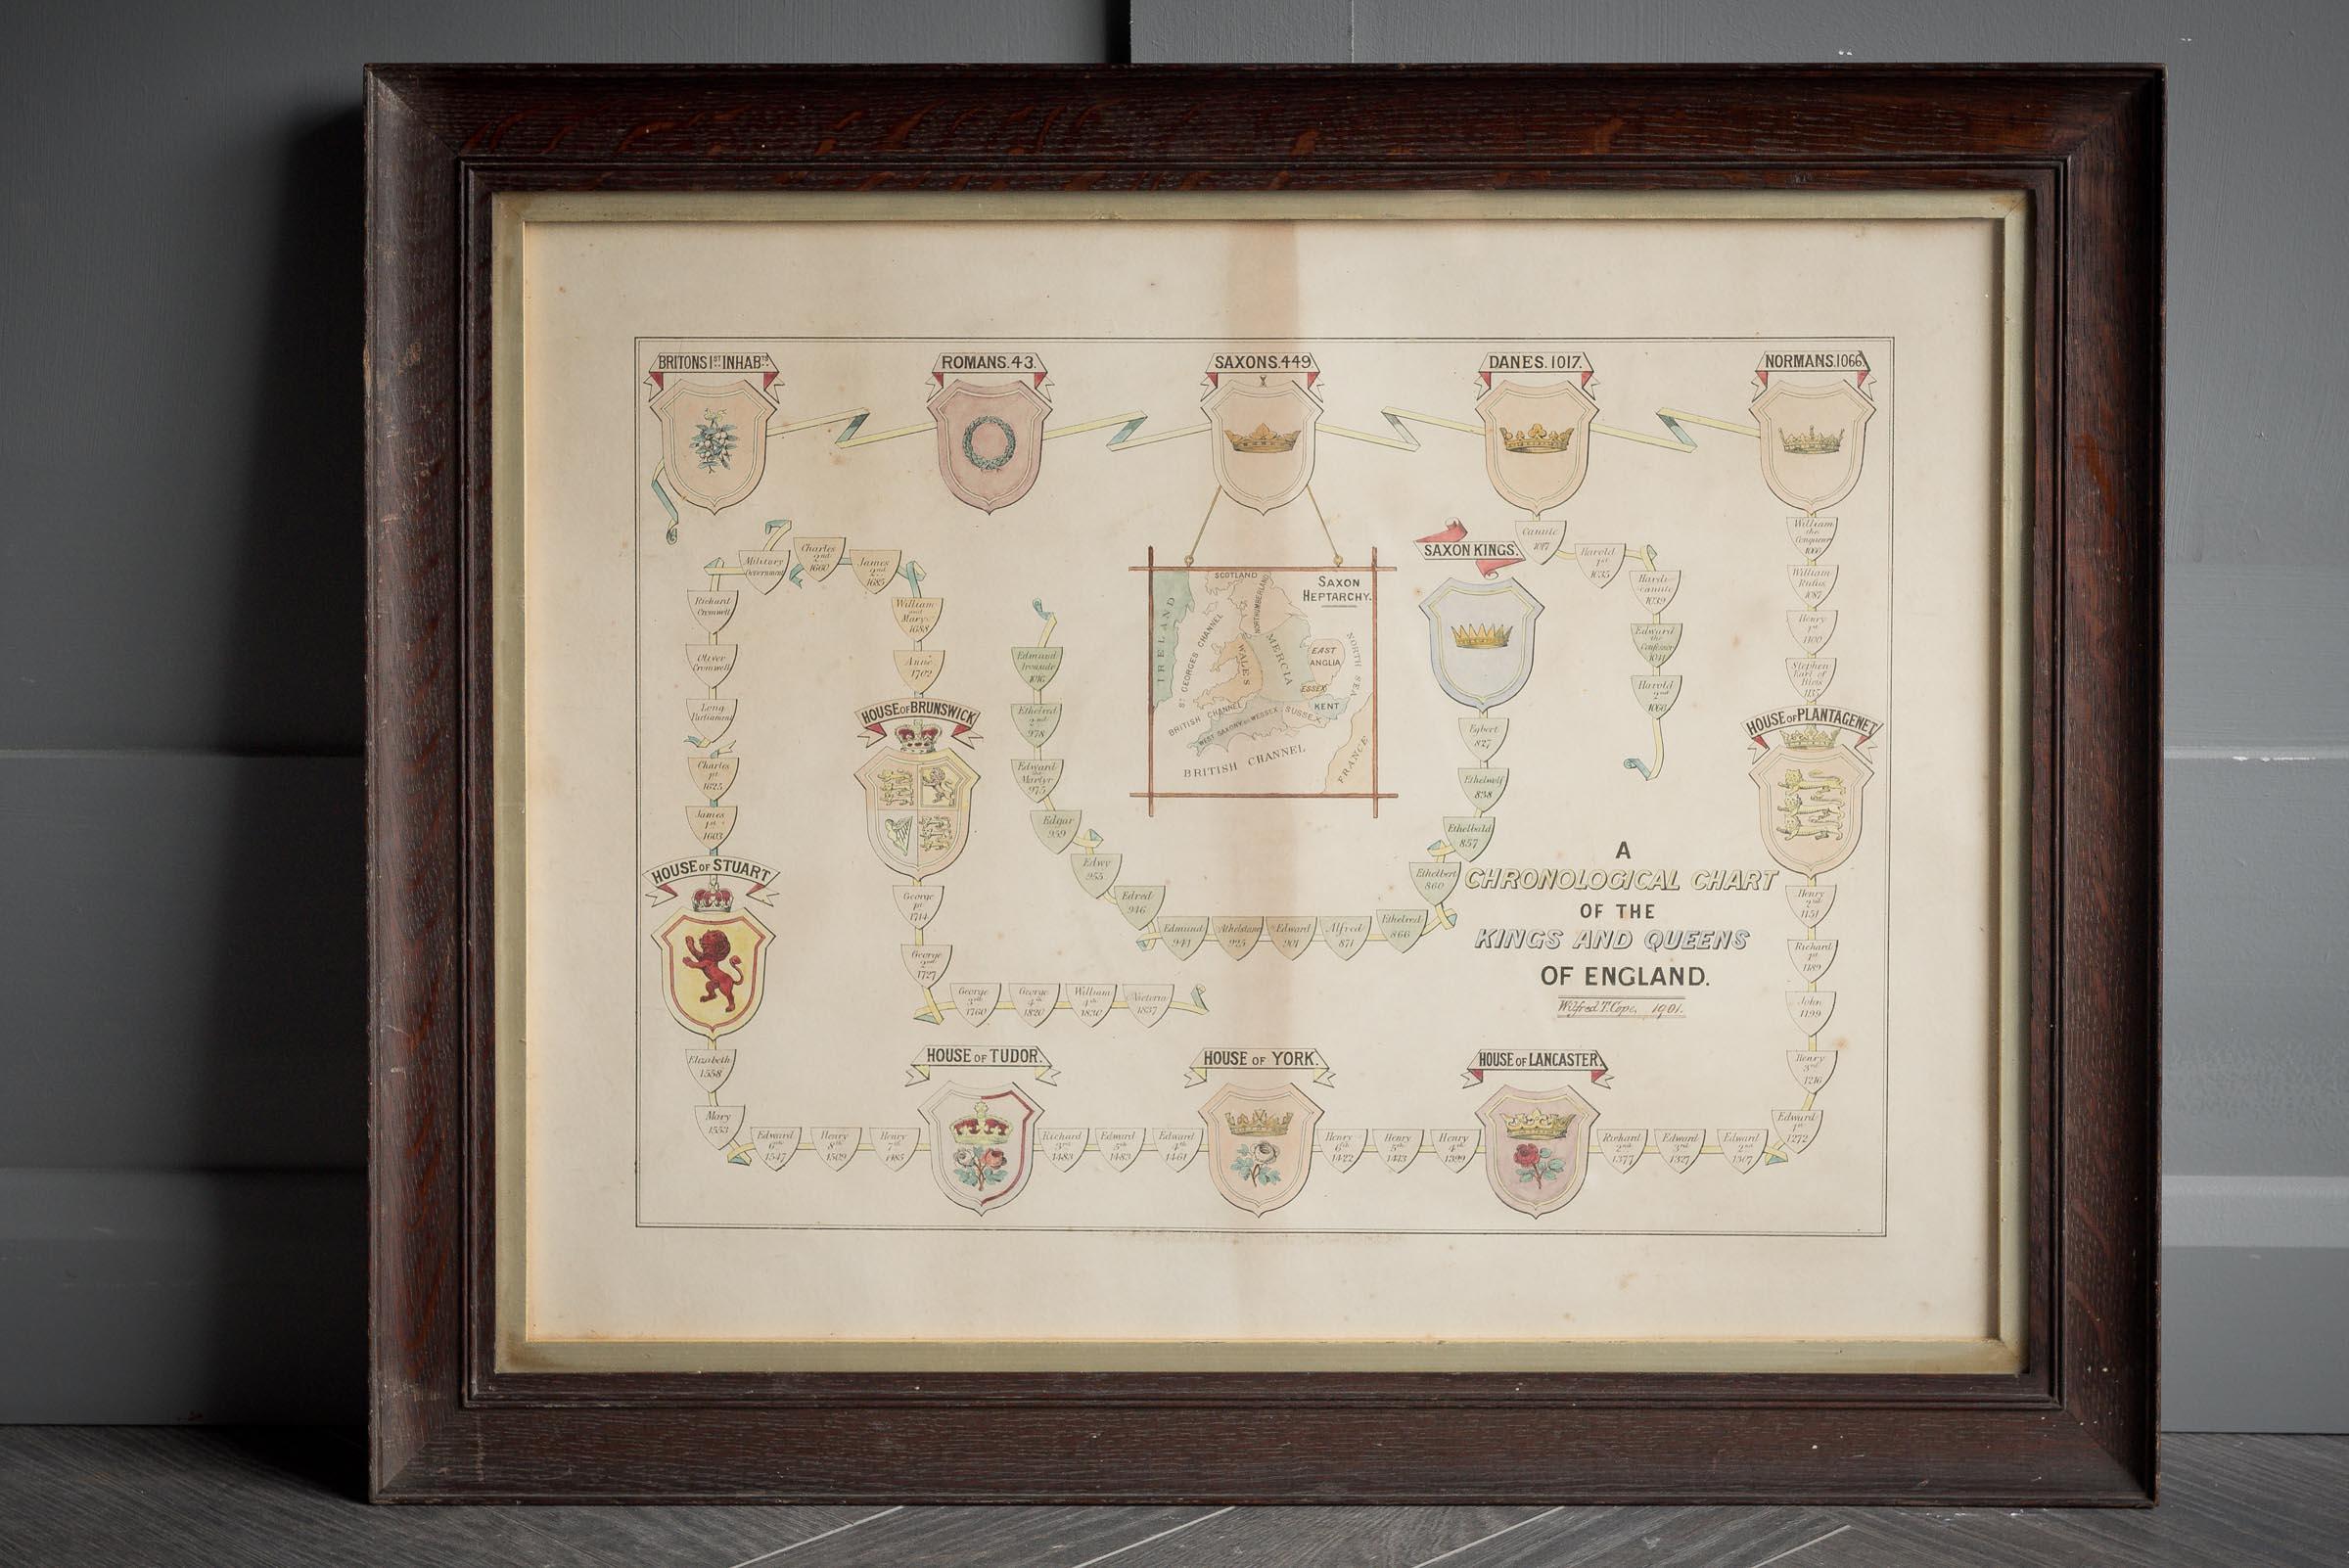 Tableau chronologique des rois et de la reine d'Angleterre réalisé en 1901.